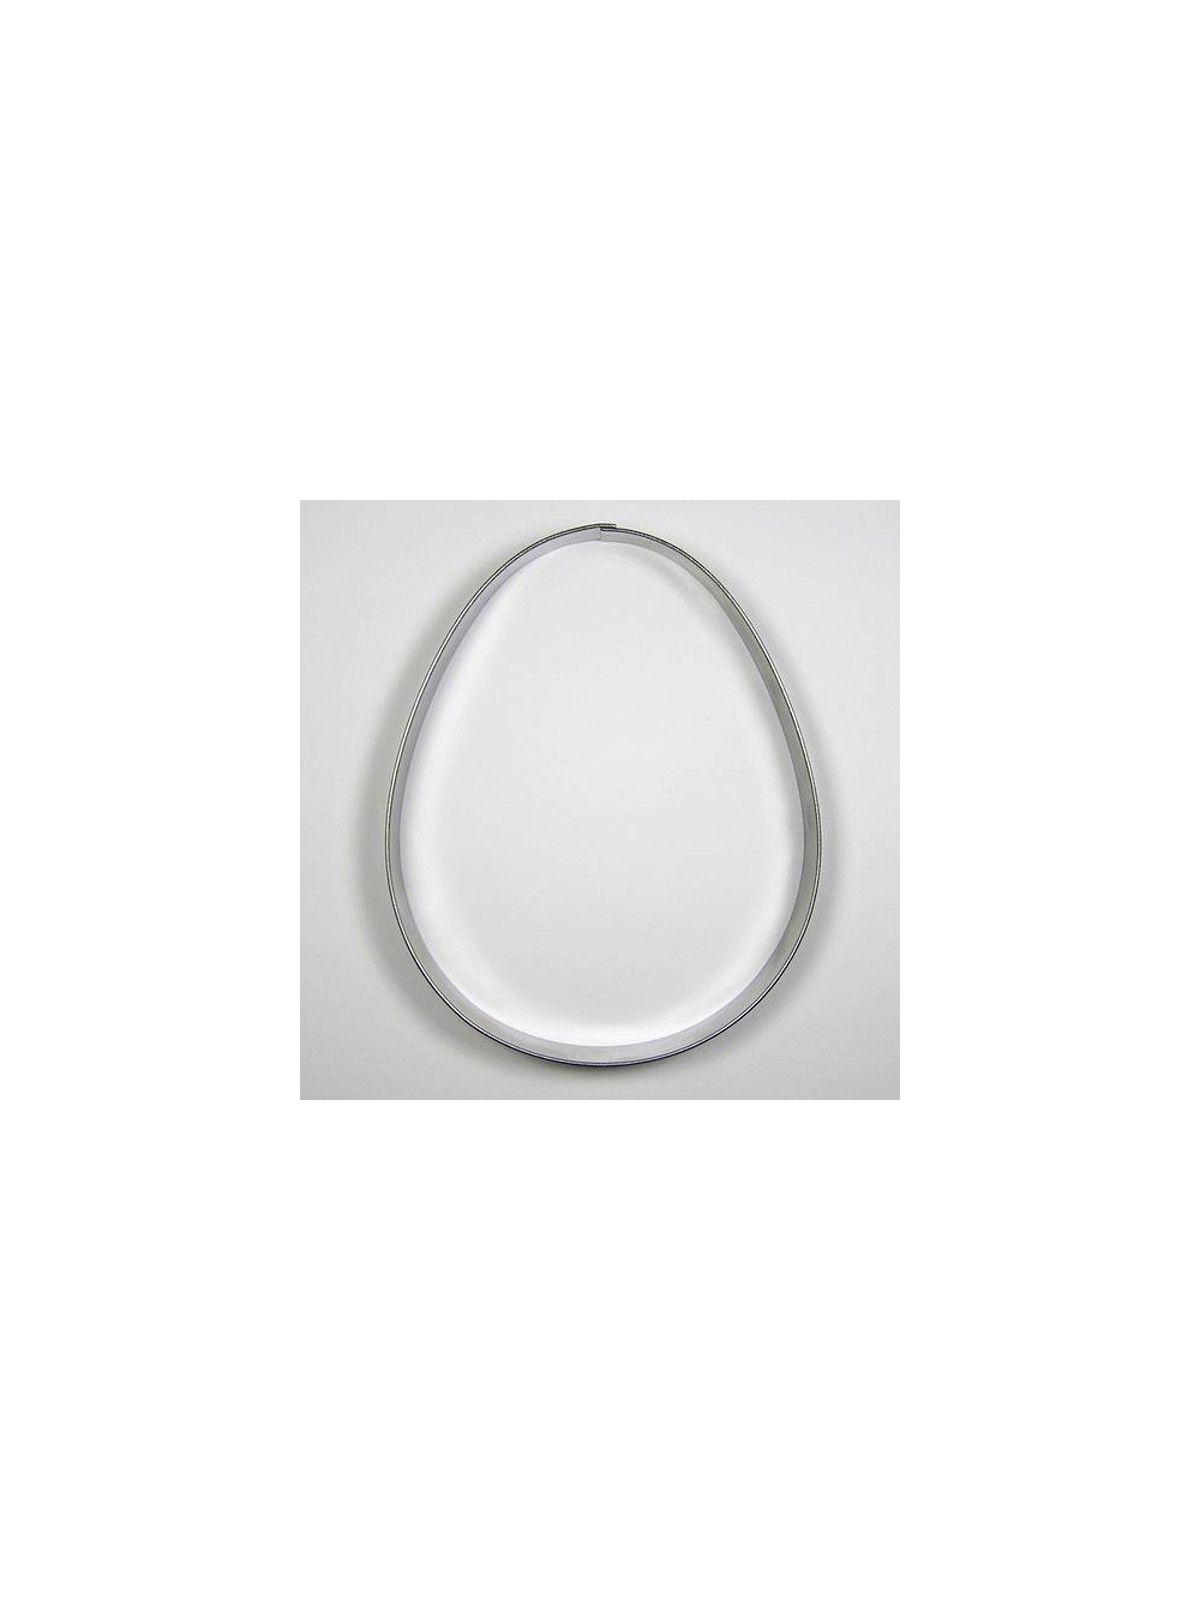 Nerezové vykrajovátko - vejce 3 ( 9cm )